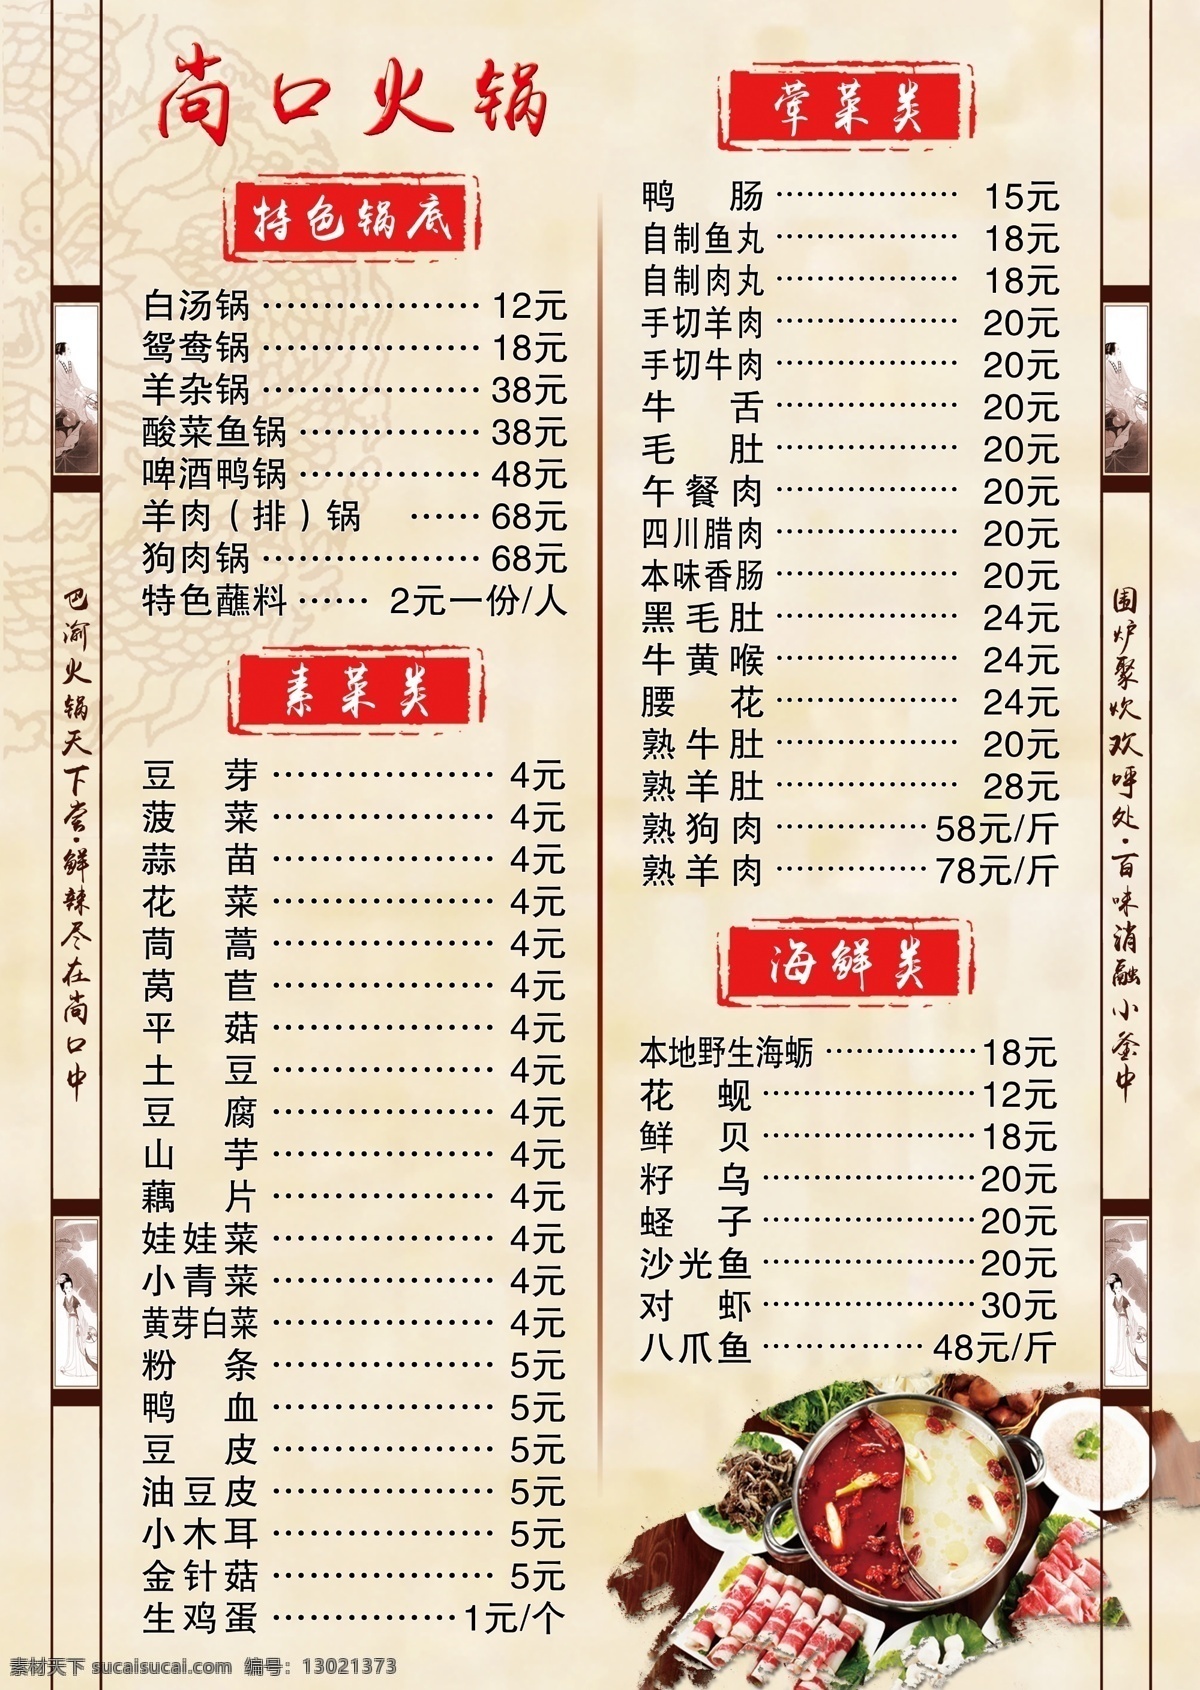 火锅 菜单 火锅菜单 古典 中国风 边框 对联 火锅底图 川味火锅 川菜